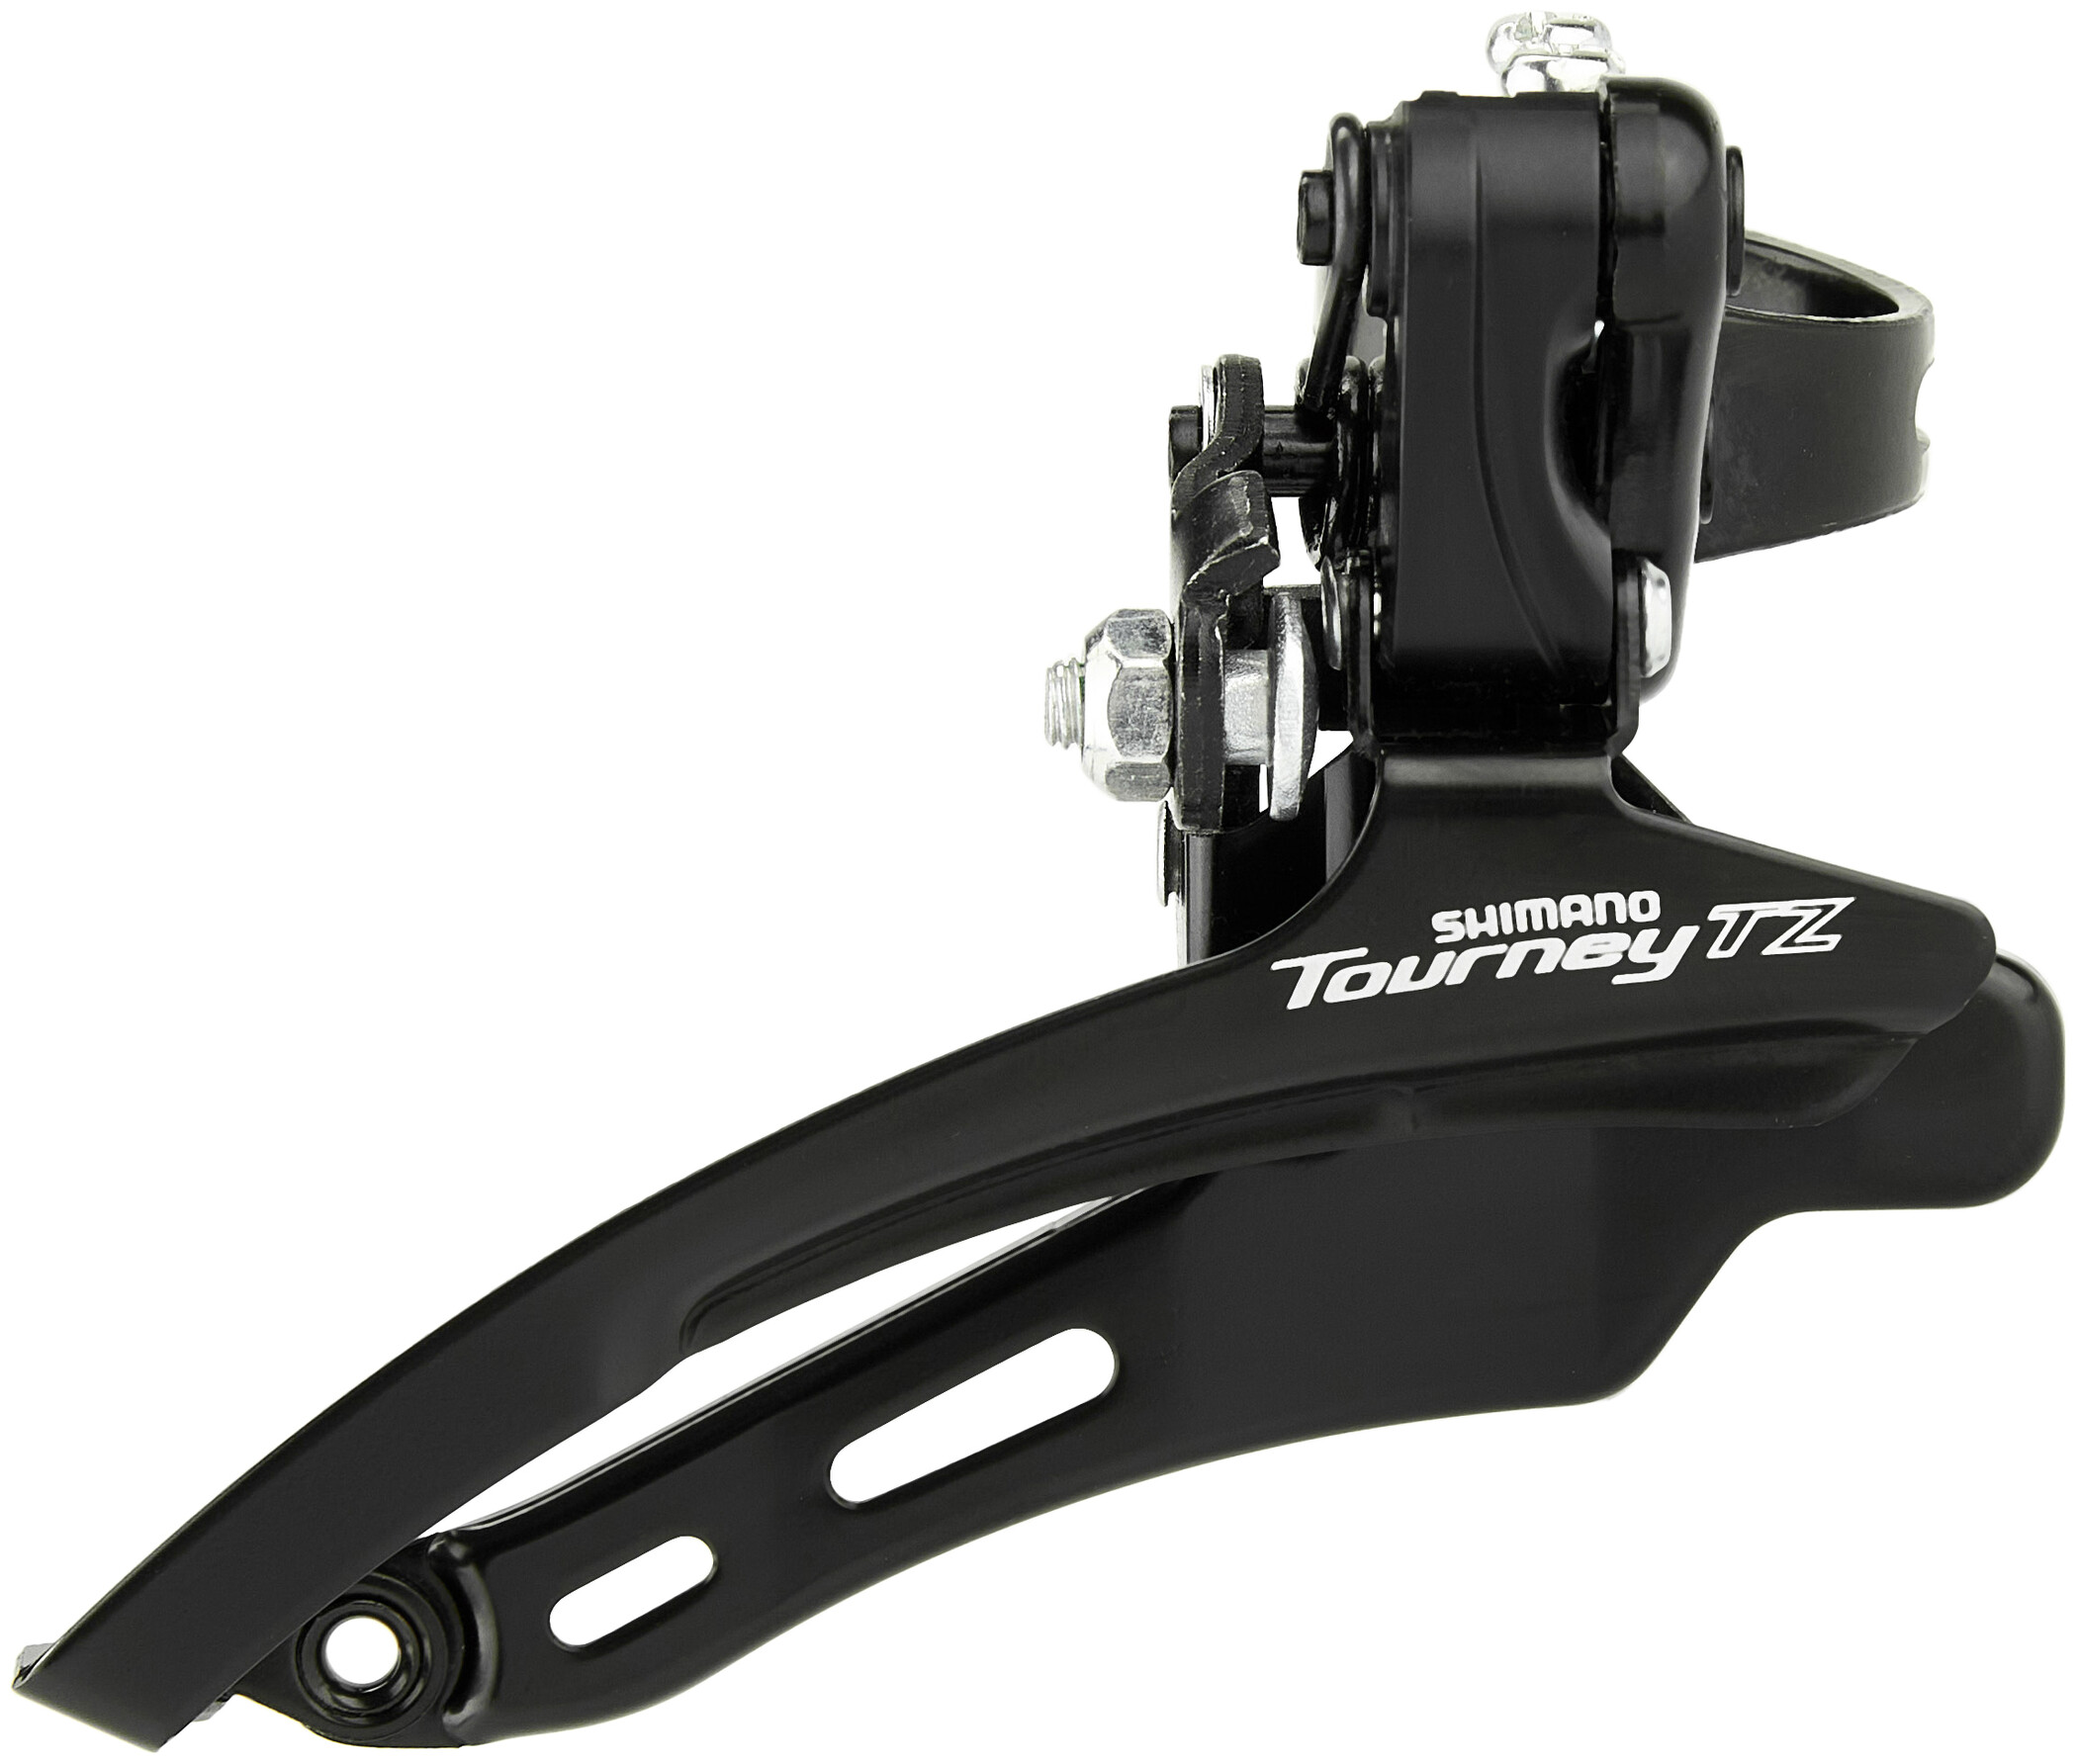 Shimano Turney TZ Fd-tz510 6 Speed Front Derailleur Down Swing Black for sale online 